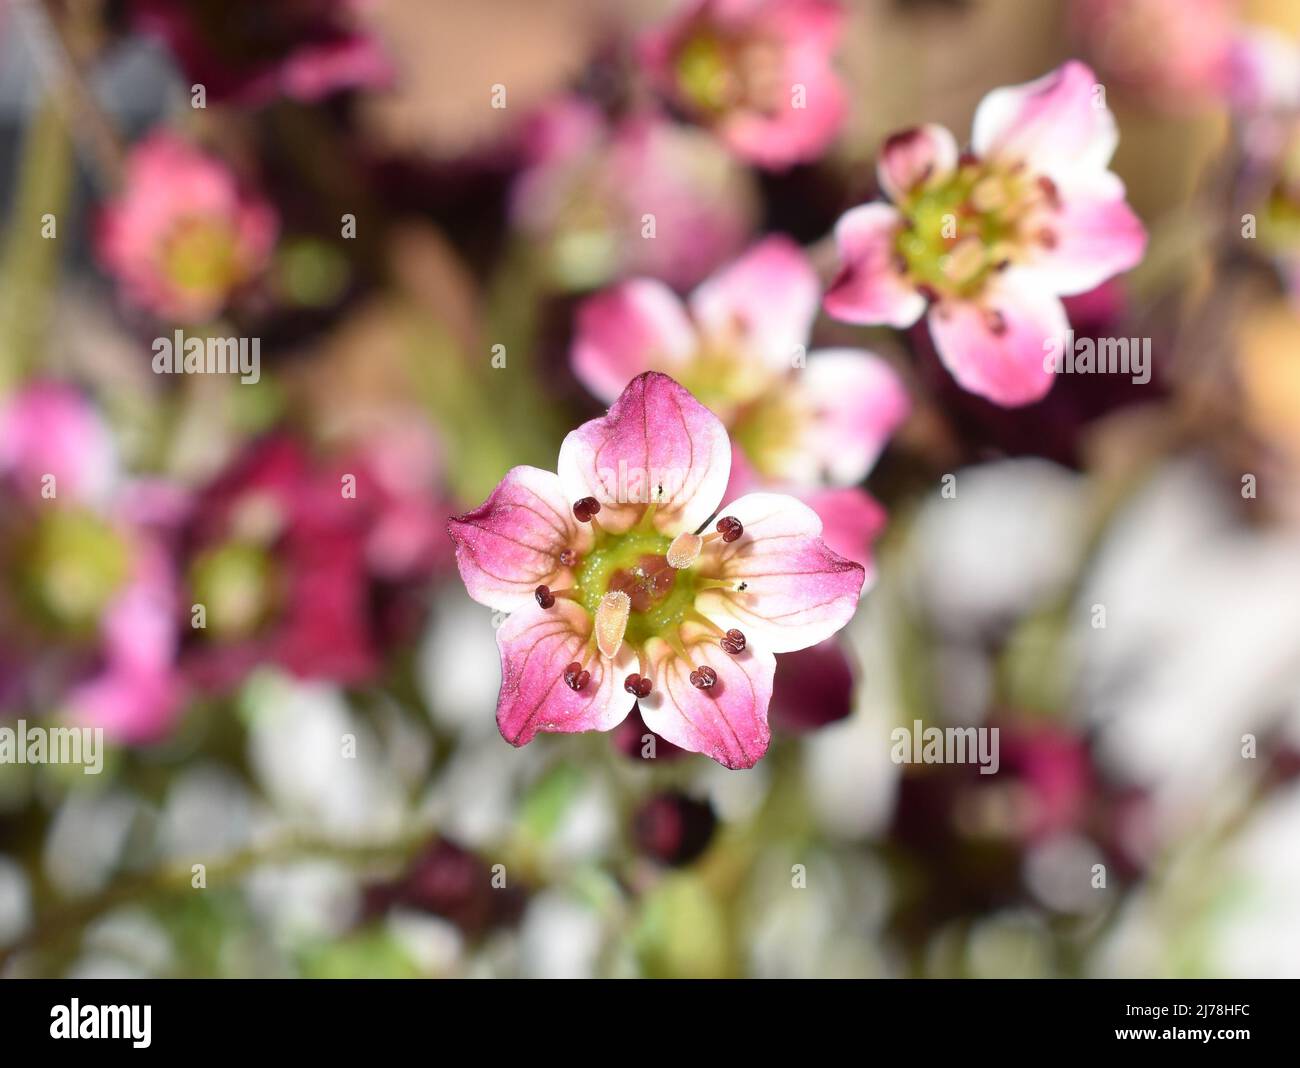 Pink saxifrage Saksifraga Arendsii flowering in a garden in springtime Stock Photo